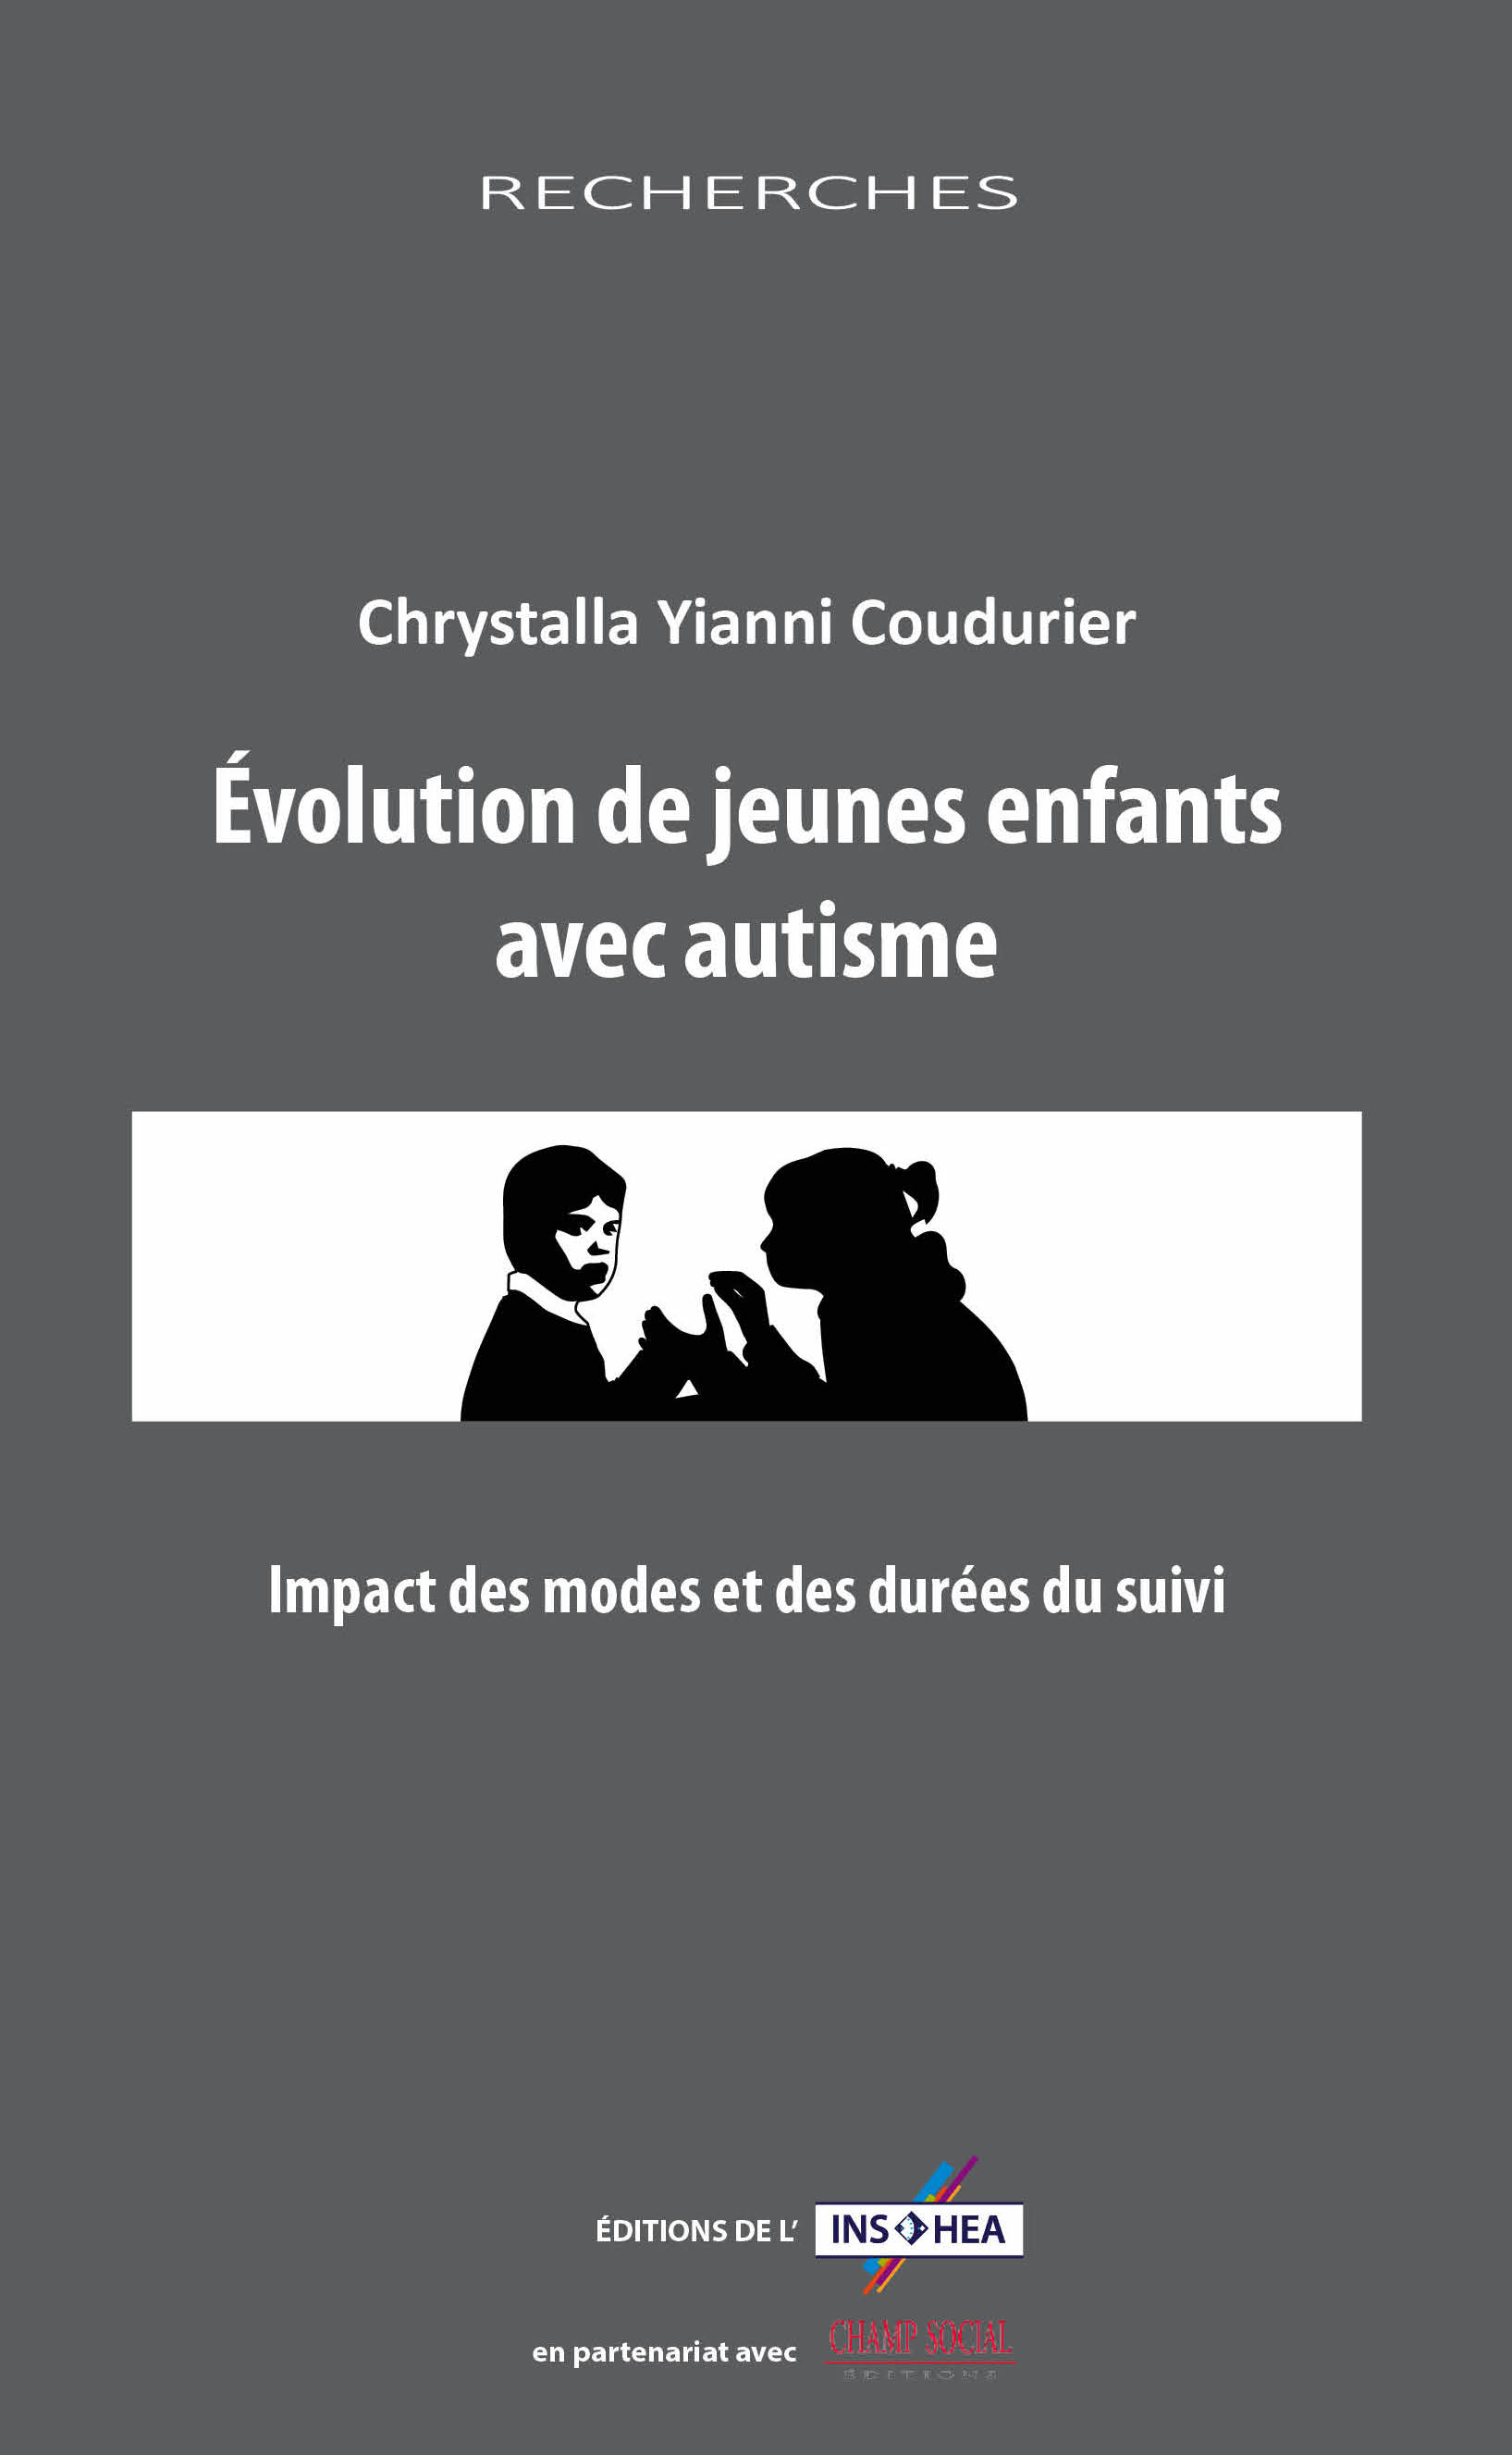 Couverture de l'ouvrage de Chrystalla Yianni Coudurier : "Évolution de jeunes enfants avec autisme"